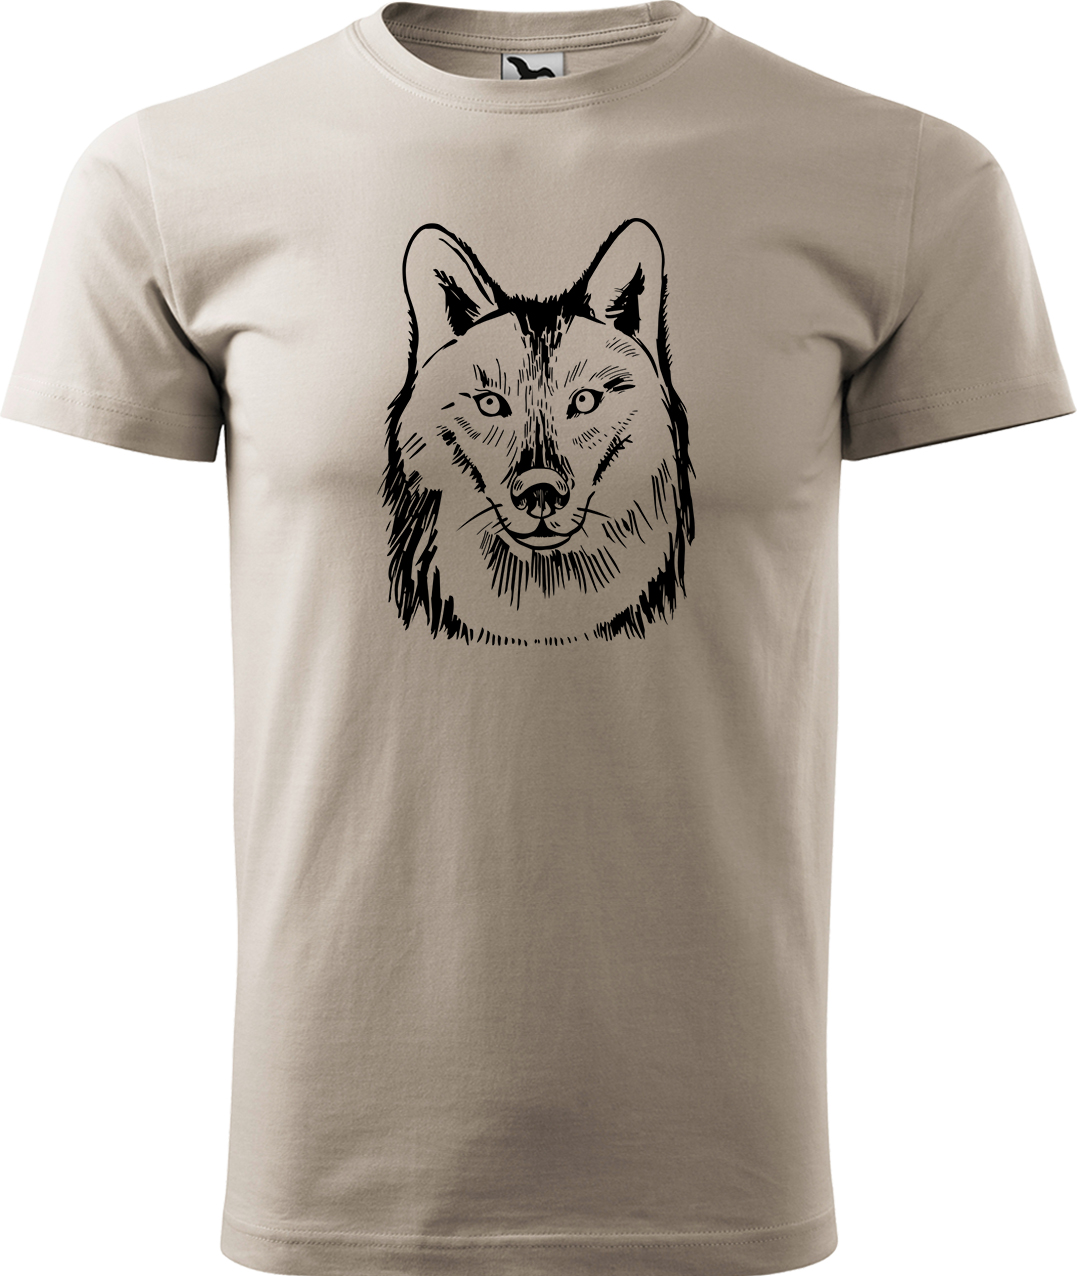 Pánské tričko s vlkem - Kresba vlka Velikost: 3XL, Barva: Béžová (51), Střih: pánský